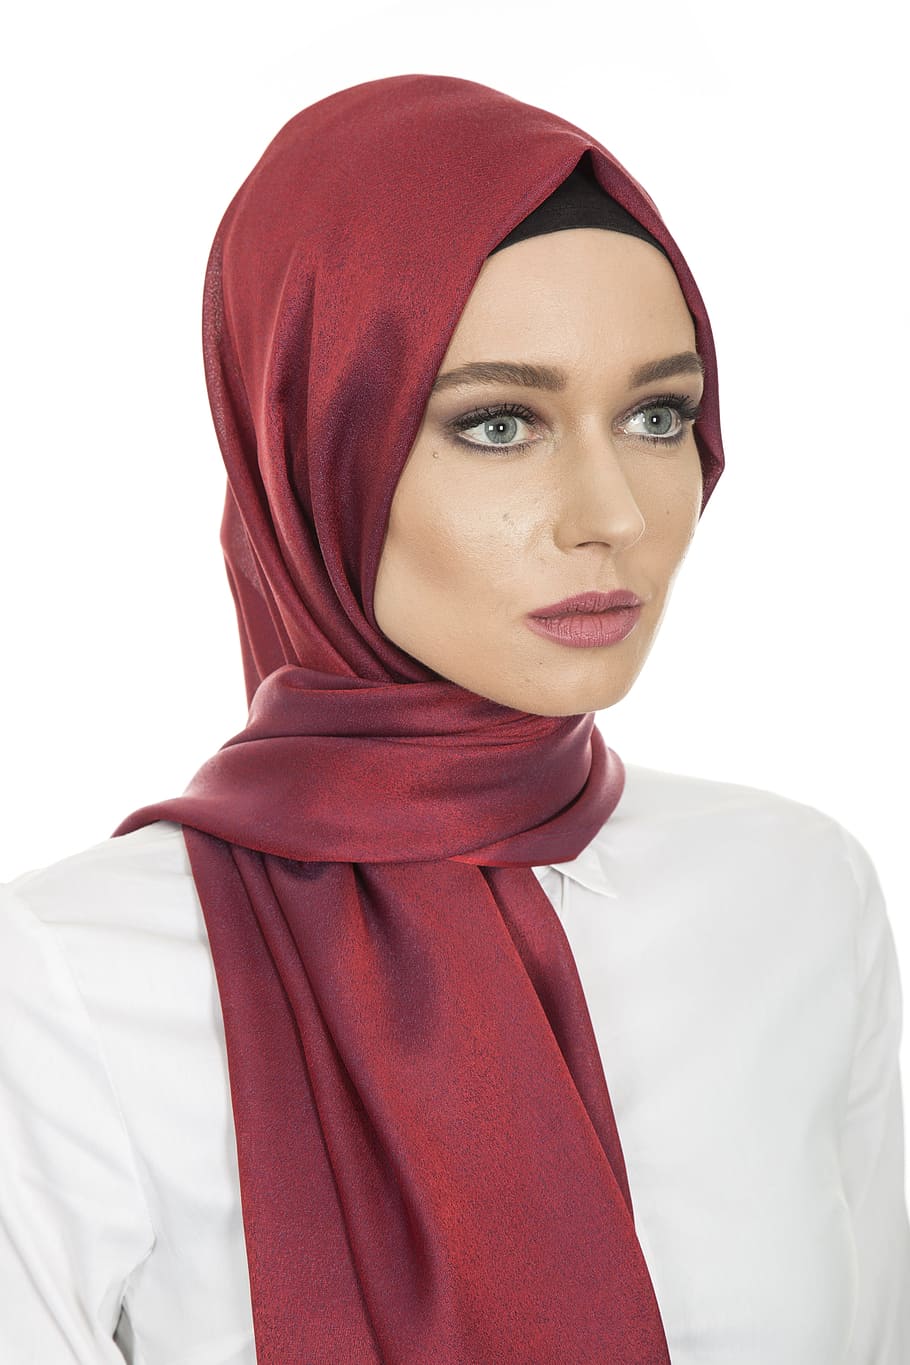 mujer, moda, islam, ropa, pañuelo en la cabeza, hijab, la mujer joven, sesión de moda, modelo joven, belleza